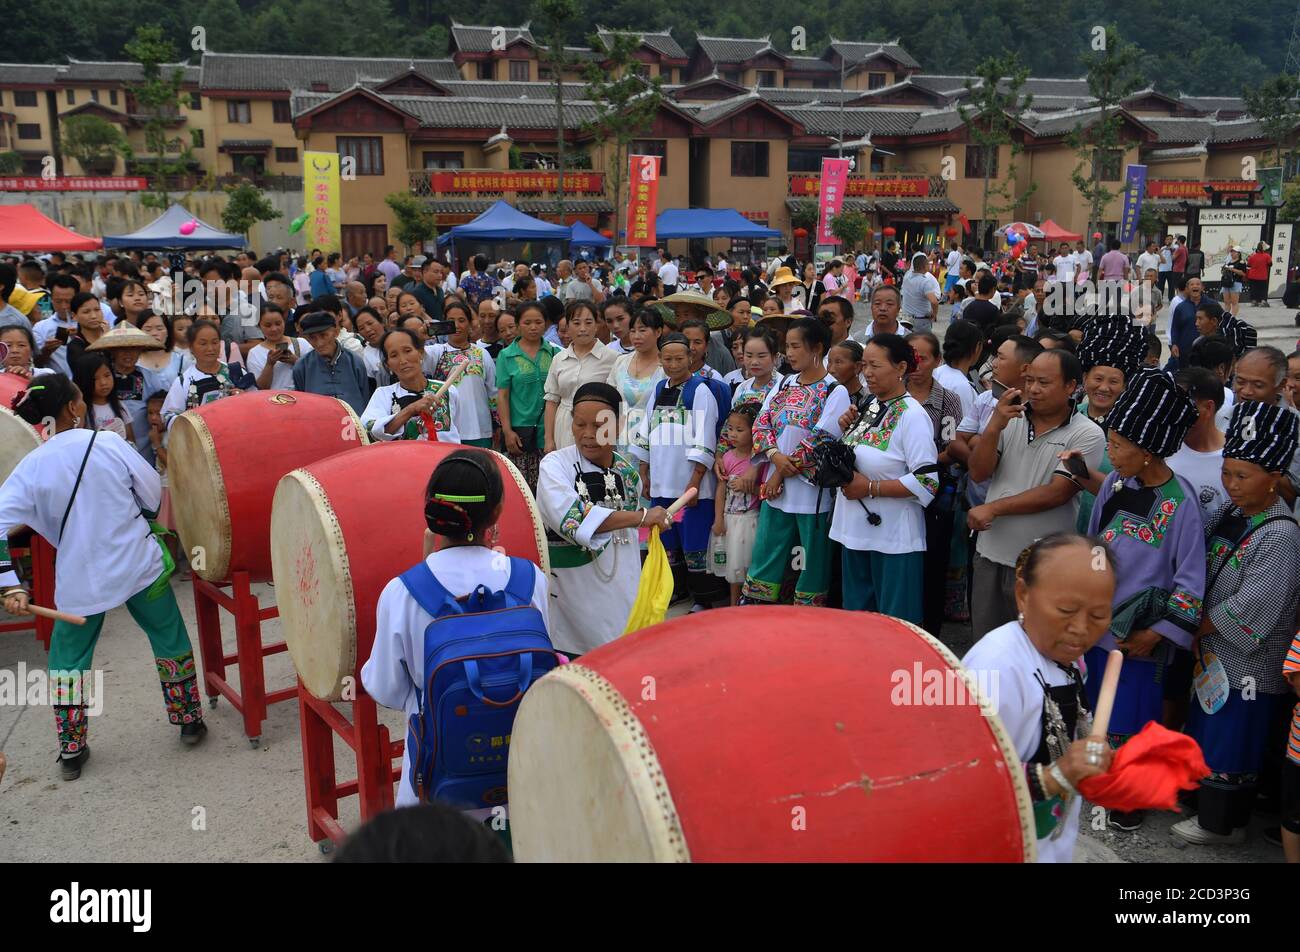 Les gens participent à la compétition de drum au Festival de la chanson folklorique double six qui a eu lieu dans le comté autonome de Chengbu Miao, dans la province de Hunan, au centre de la Chine, le 26 juillet Banque D'Images